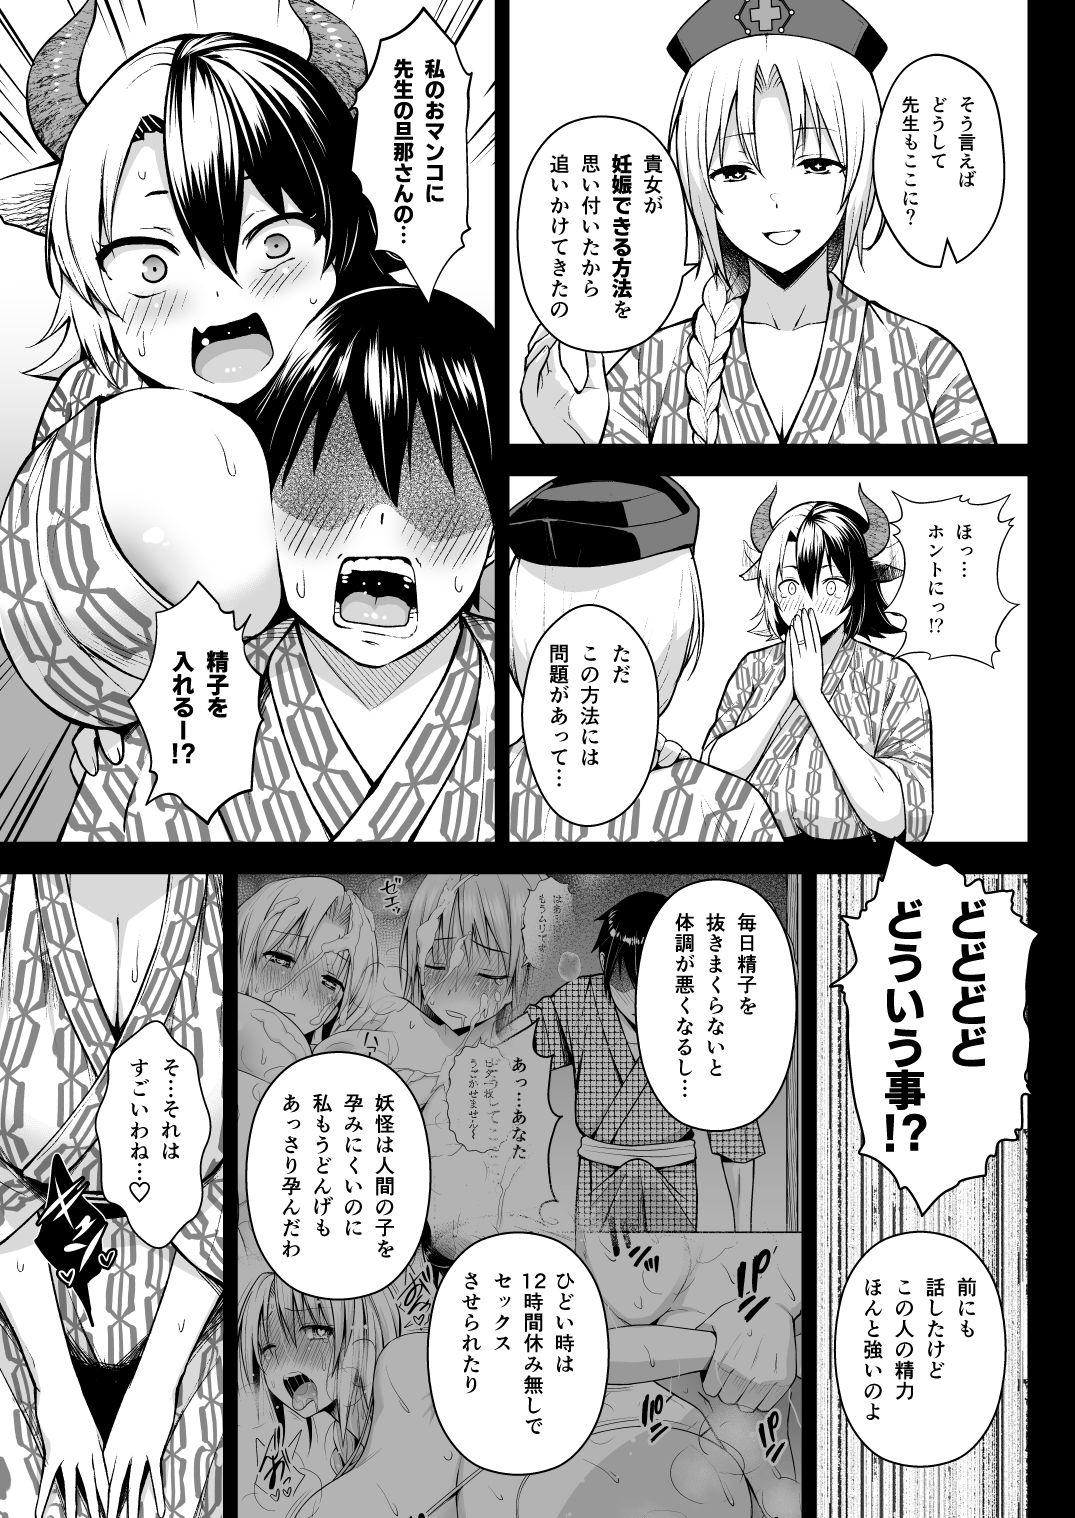 Handjobs Oku-san no Oppai ga Dekasugiru noga Warui! 5 - Touhou project Dorm - Page 4